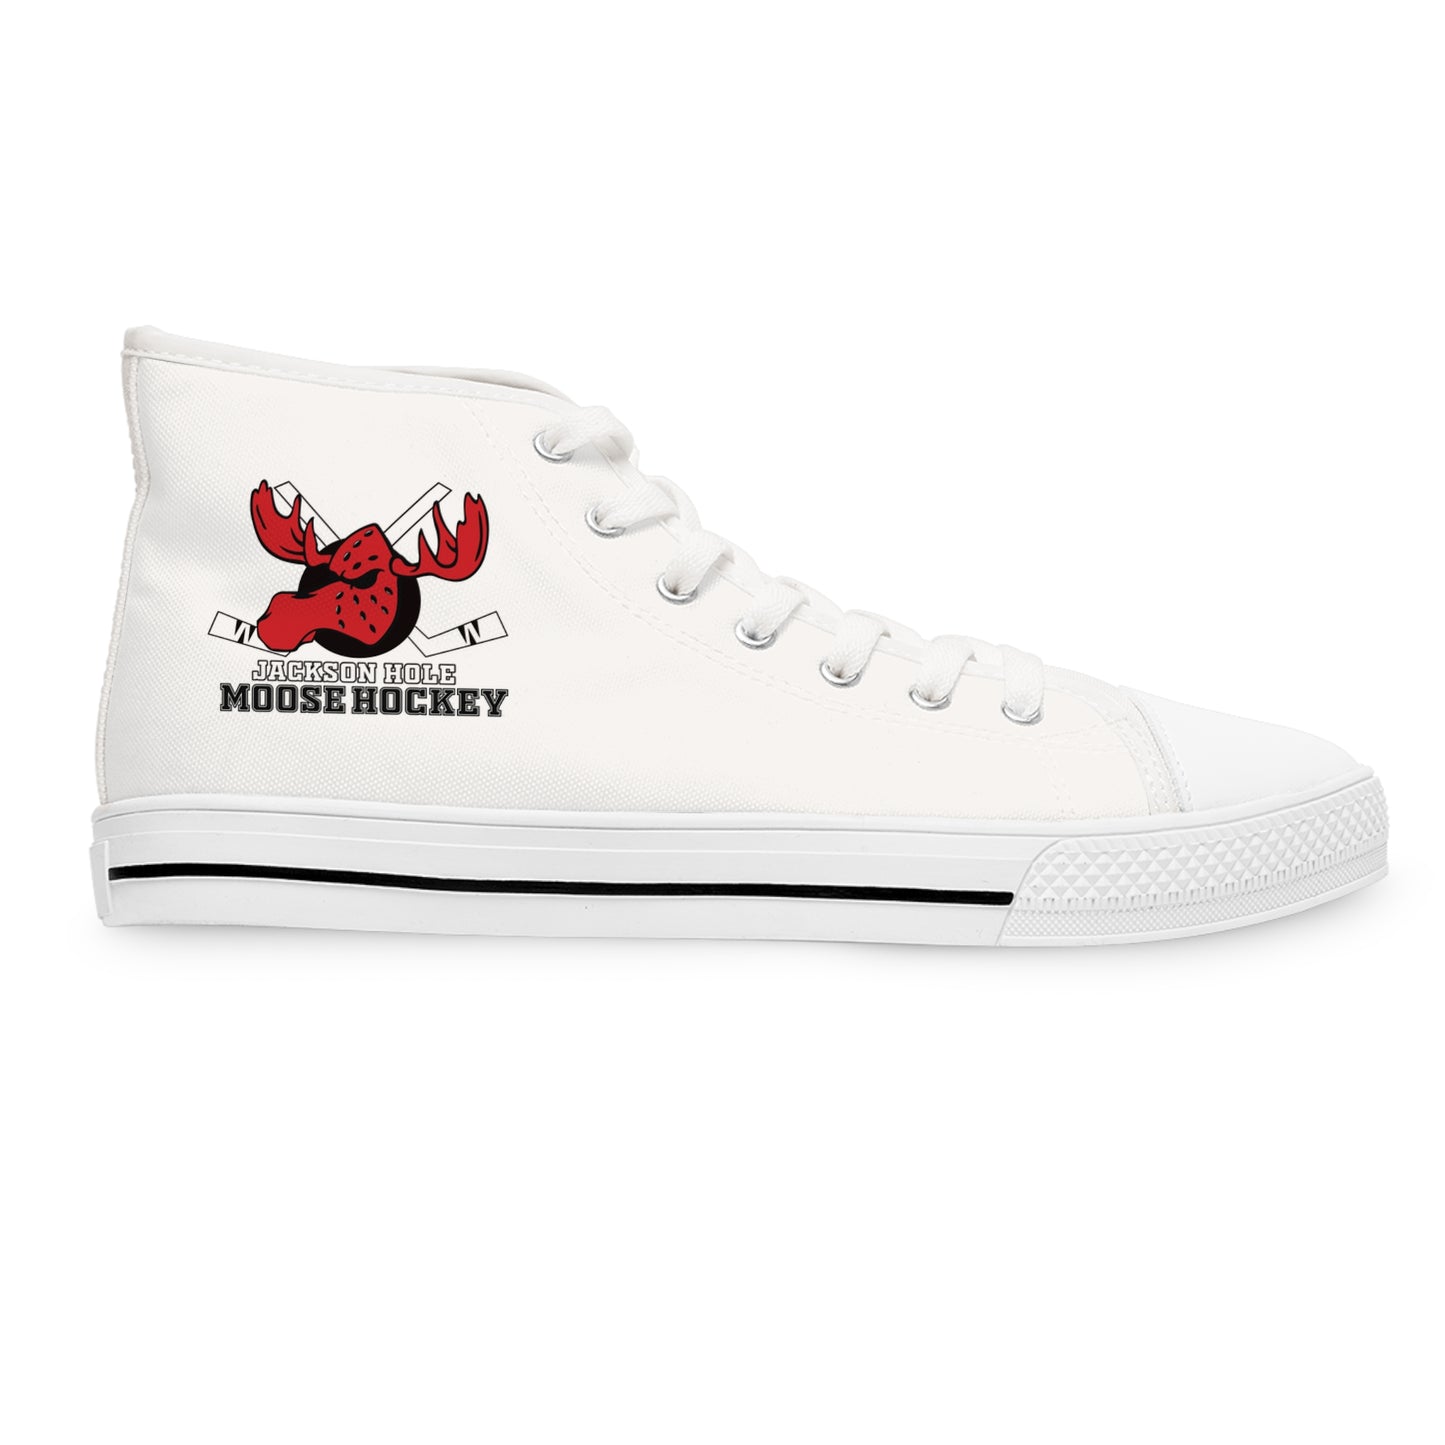 JH Moose Hockey Ladies High Top Sneakers